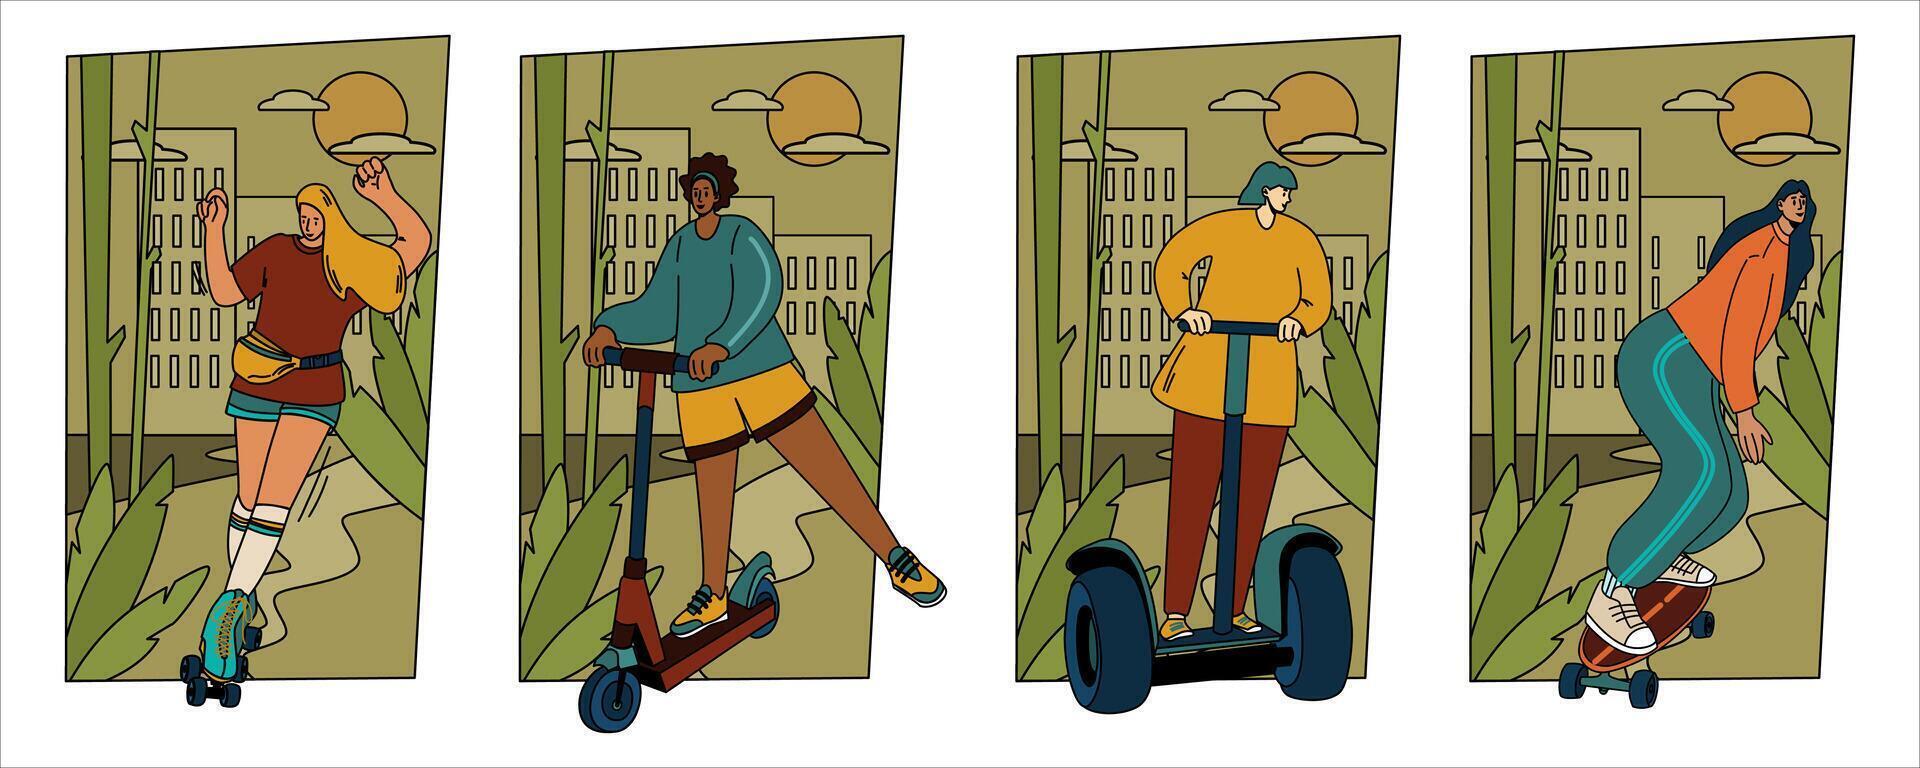 Mädchen Reise durch Privat Transport. städtisch Handy, Mobiltelefon Transport. Frauen auf ein Skateboard Walze Rollschuhe Kreisel Roller Roller. das Konzept von Ökologie vektor